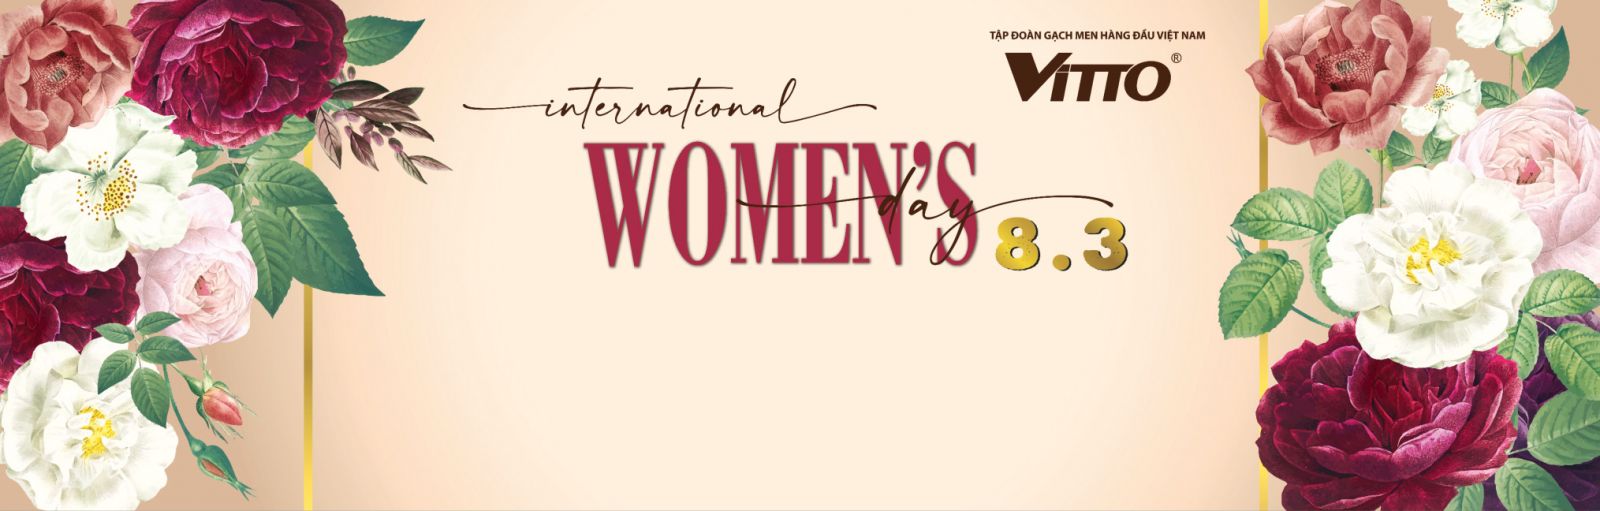 Tôn vinh phụ nữ qua cuộc thi ảnh  “Duyên dáng Vitto – Hoàn Mỹ” 